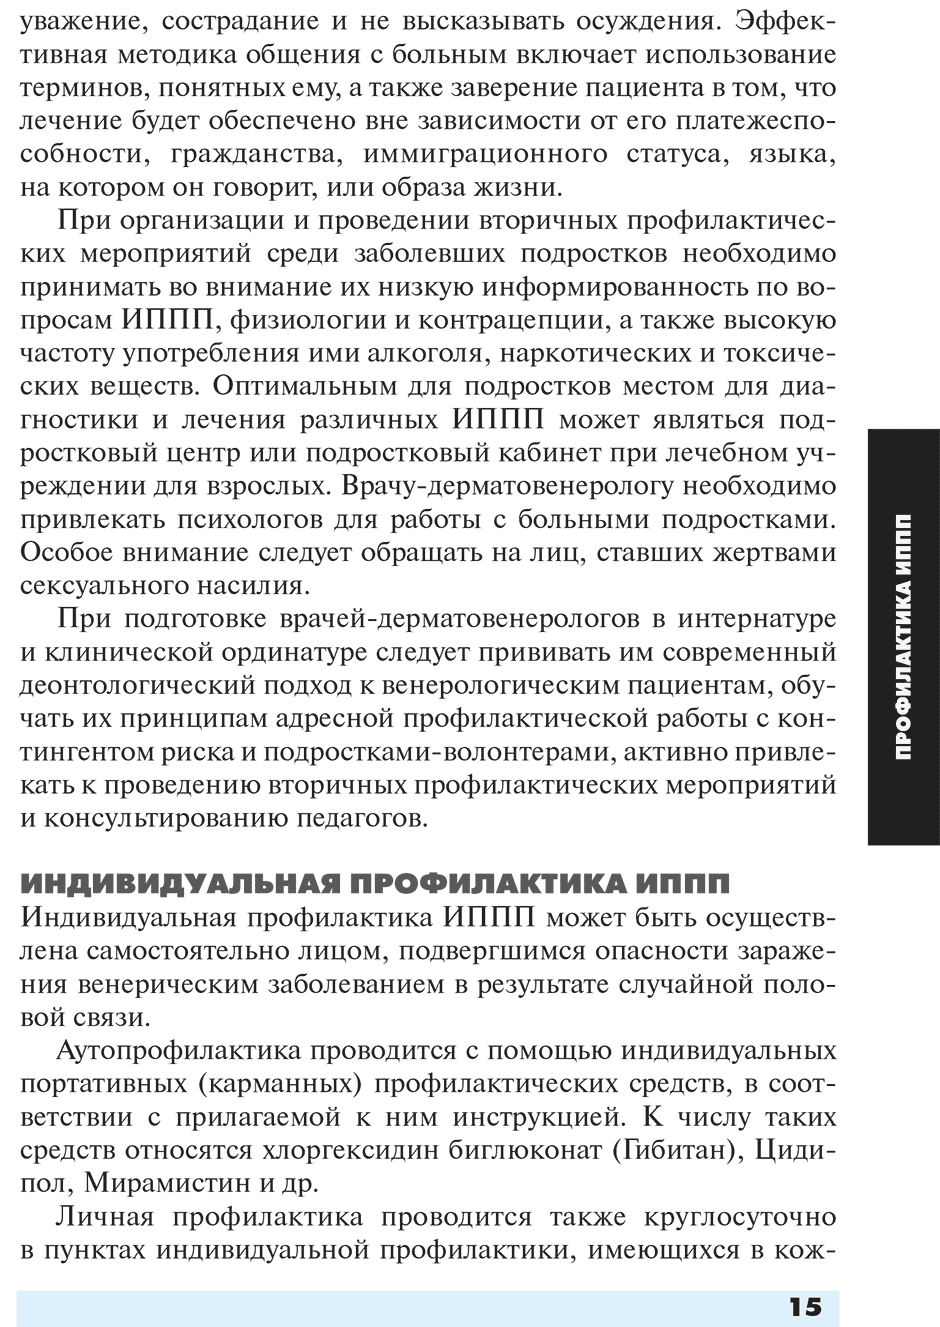 Пример страницы из книги "Инфекции, передаваемые половым путем" - Соколовский Е. В., Савичева А. М., Домейка М.